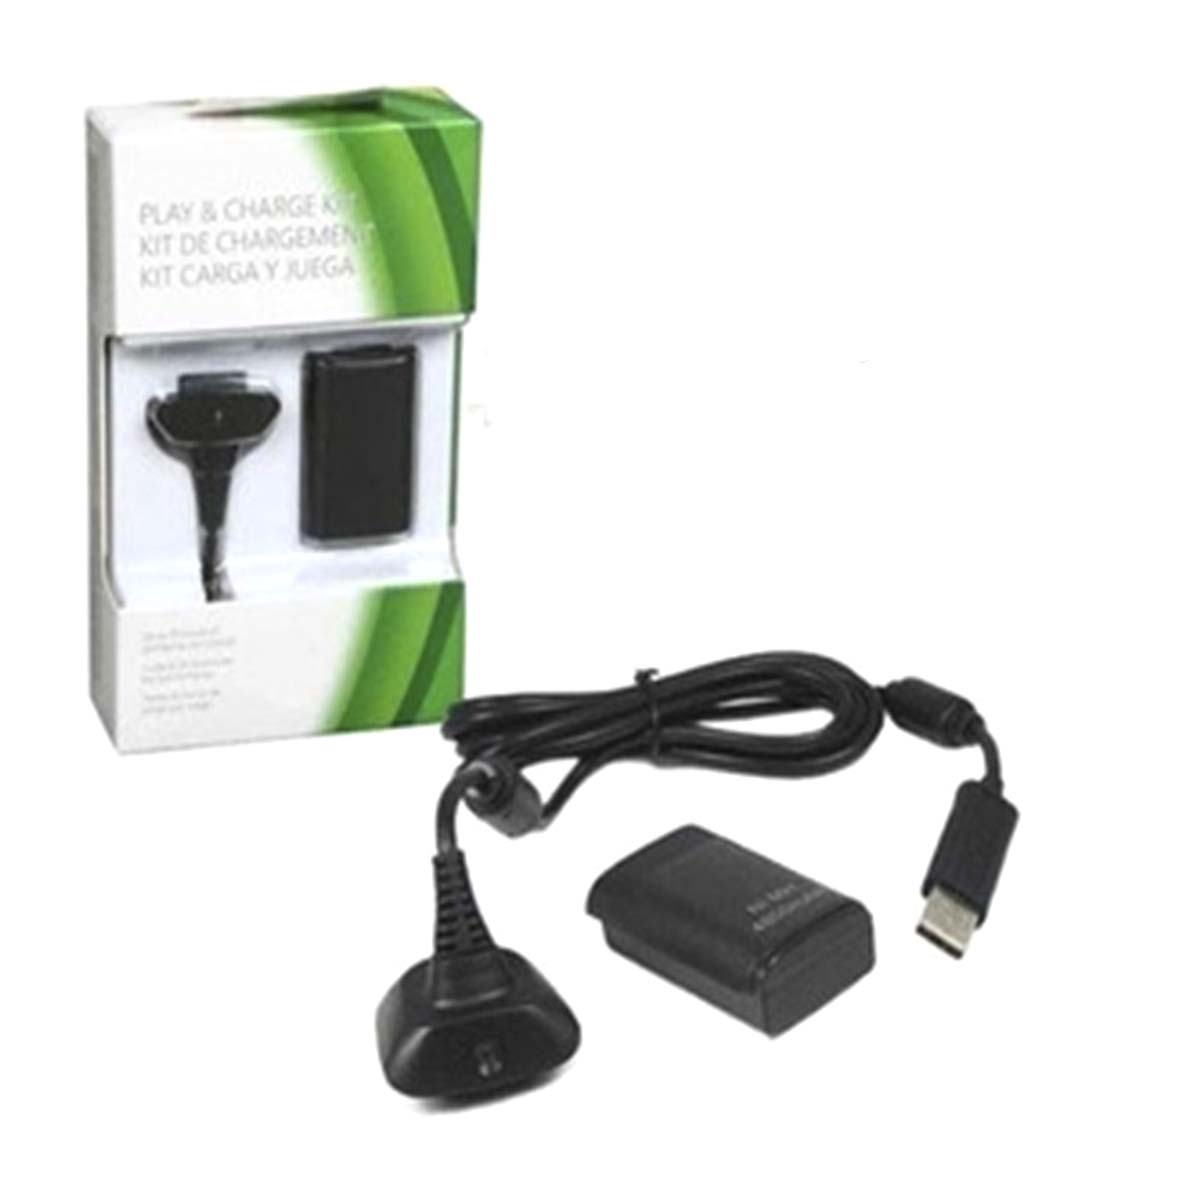 АКБ 360 Play & Charge Kit для джостика Xbox 360 с кабелем зарядки, цвет черный